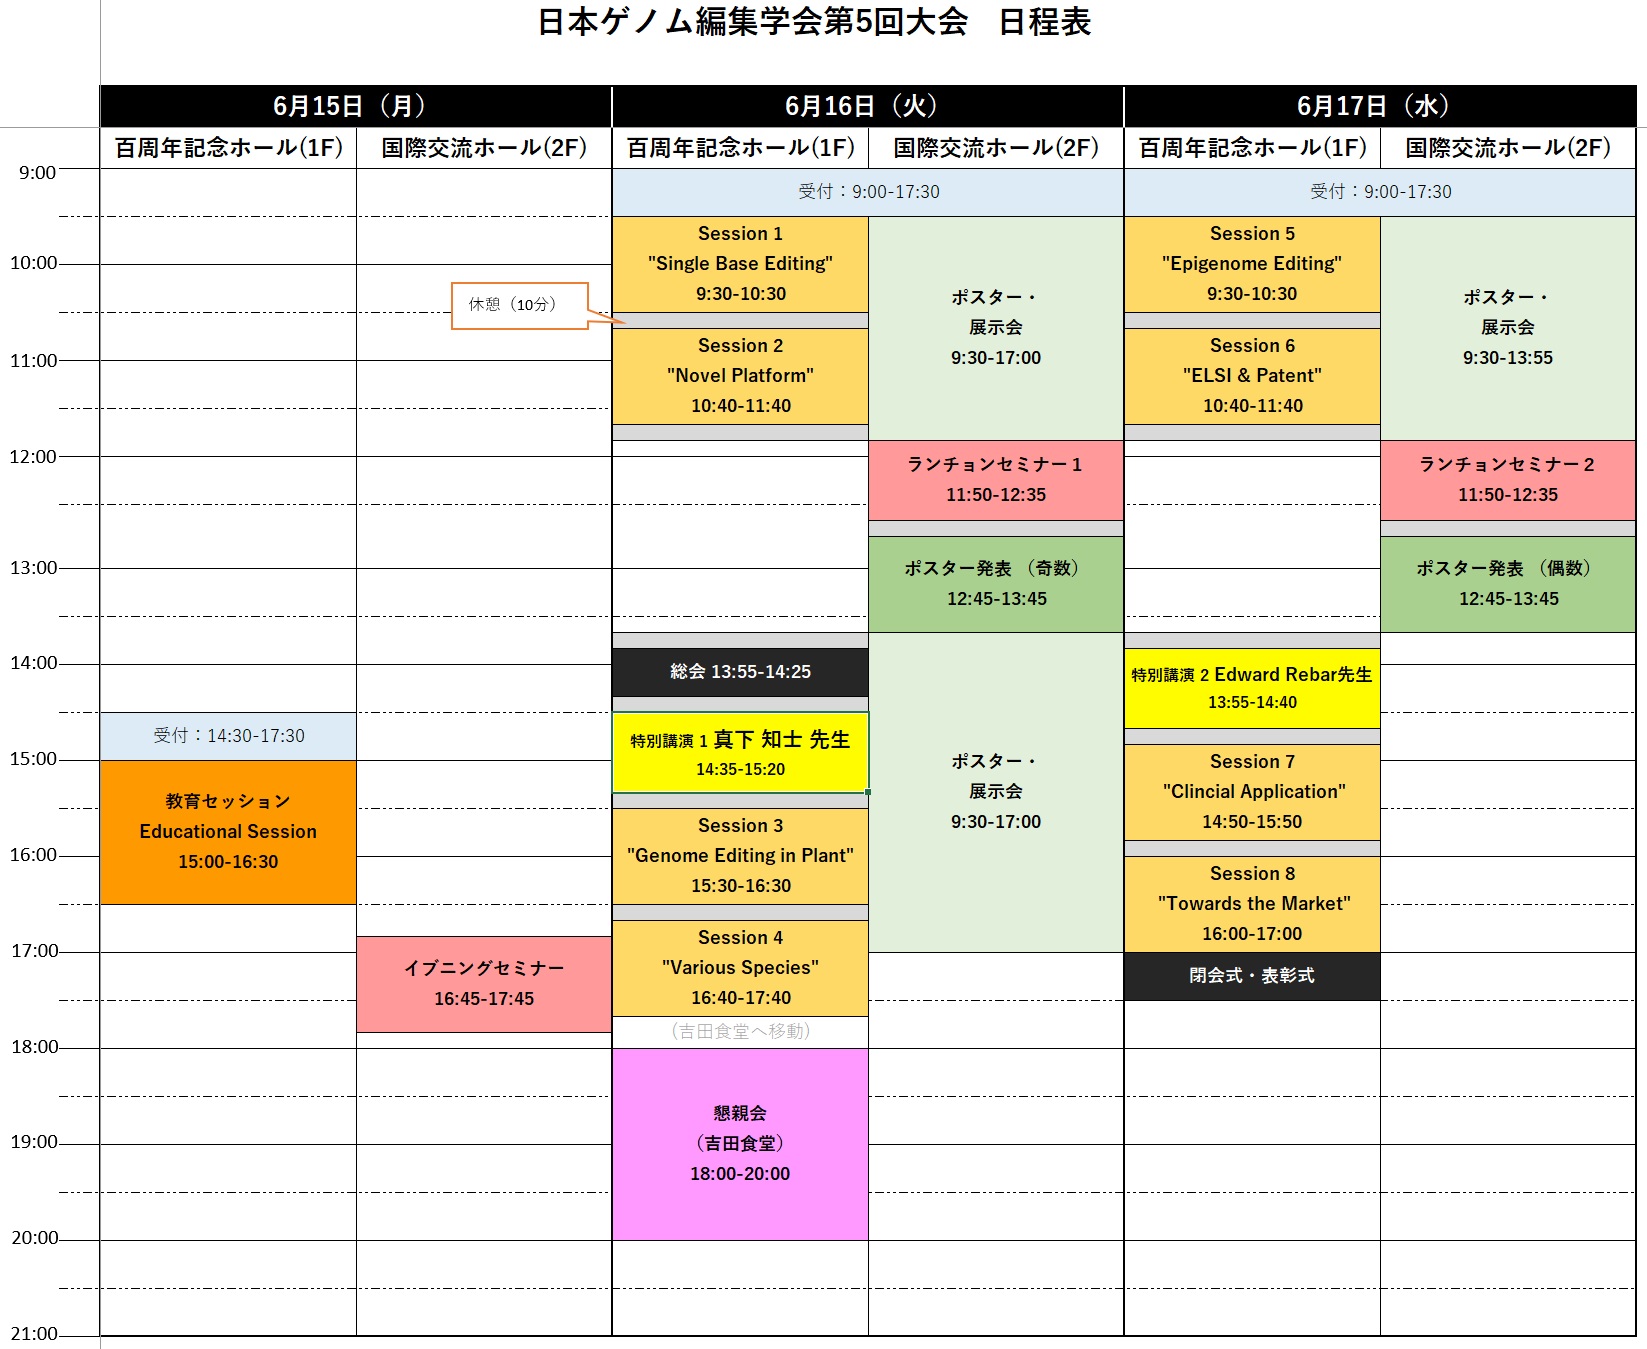 Japanese schedule